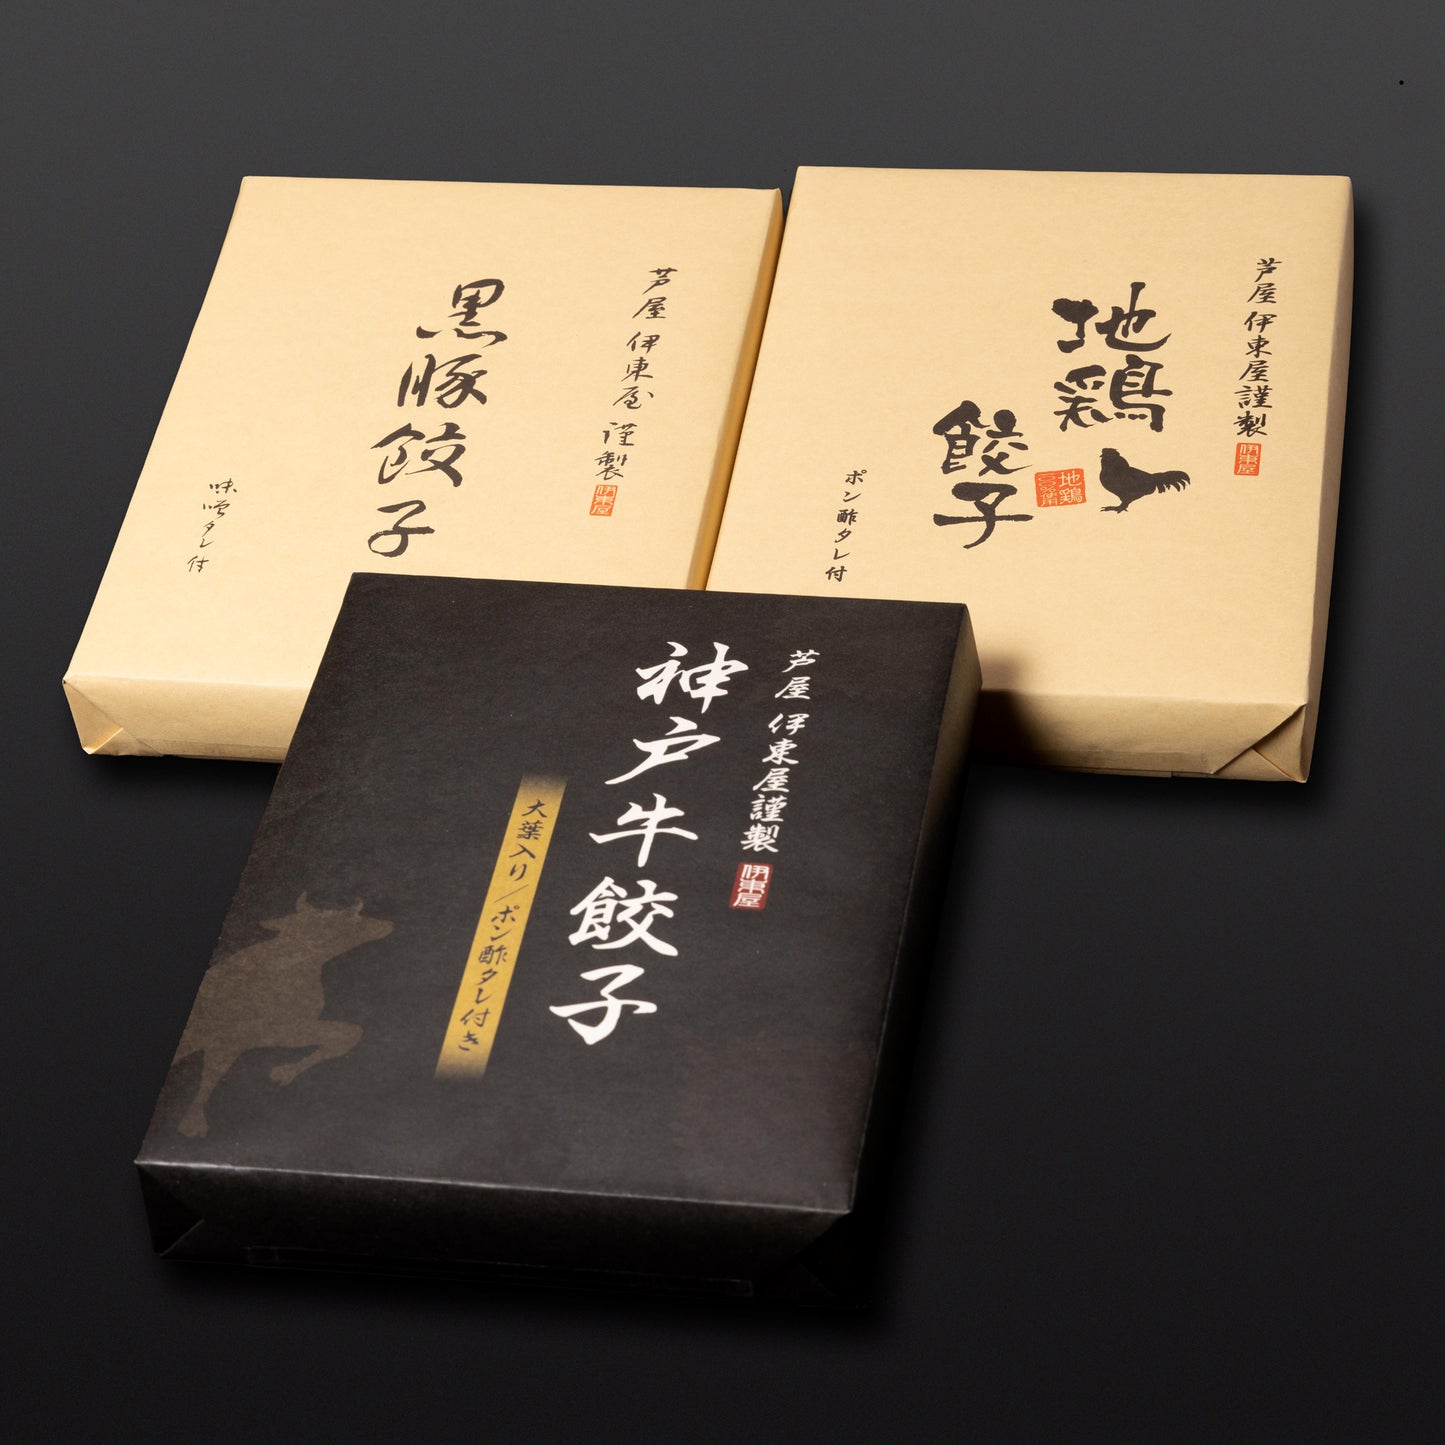 芦屋 伊東屋謹製「神戸牛餃子」1折・「黒豚餃子」1折・「地鶏餃子」1折セット